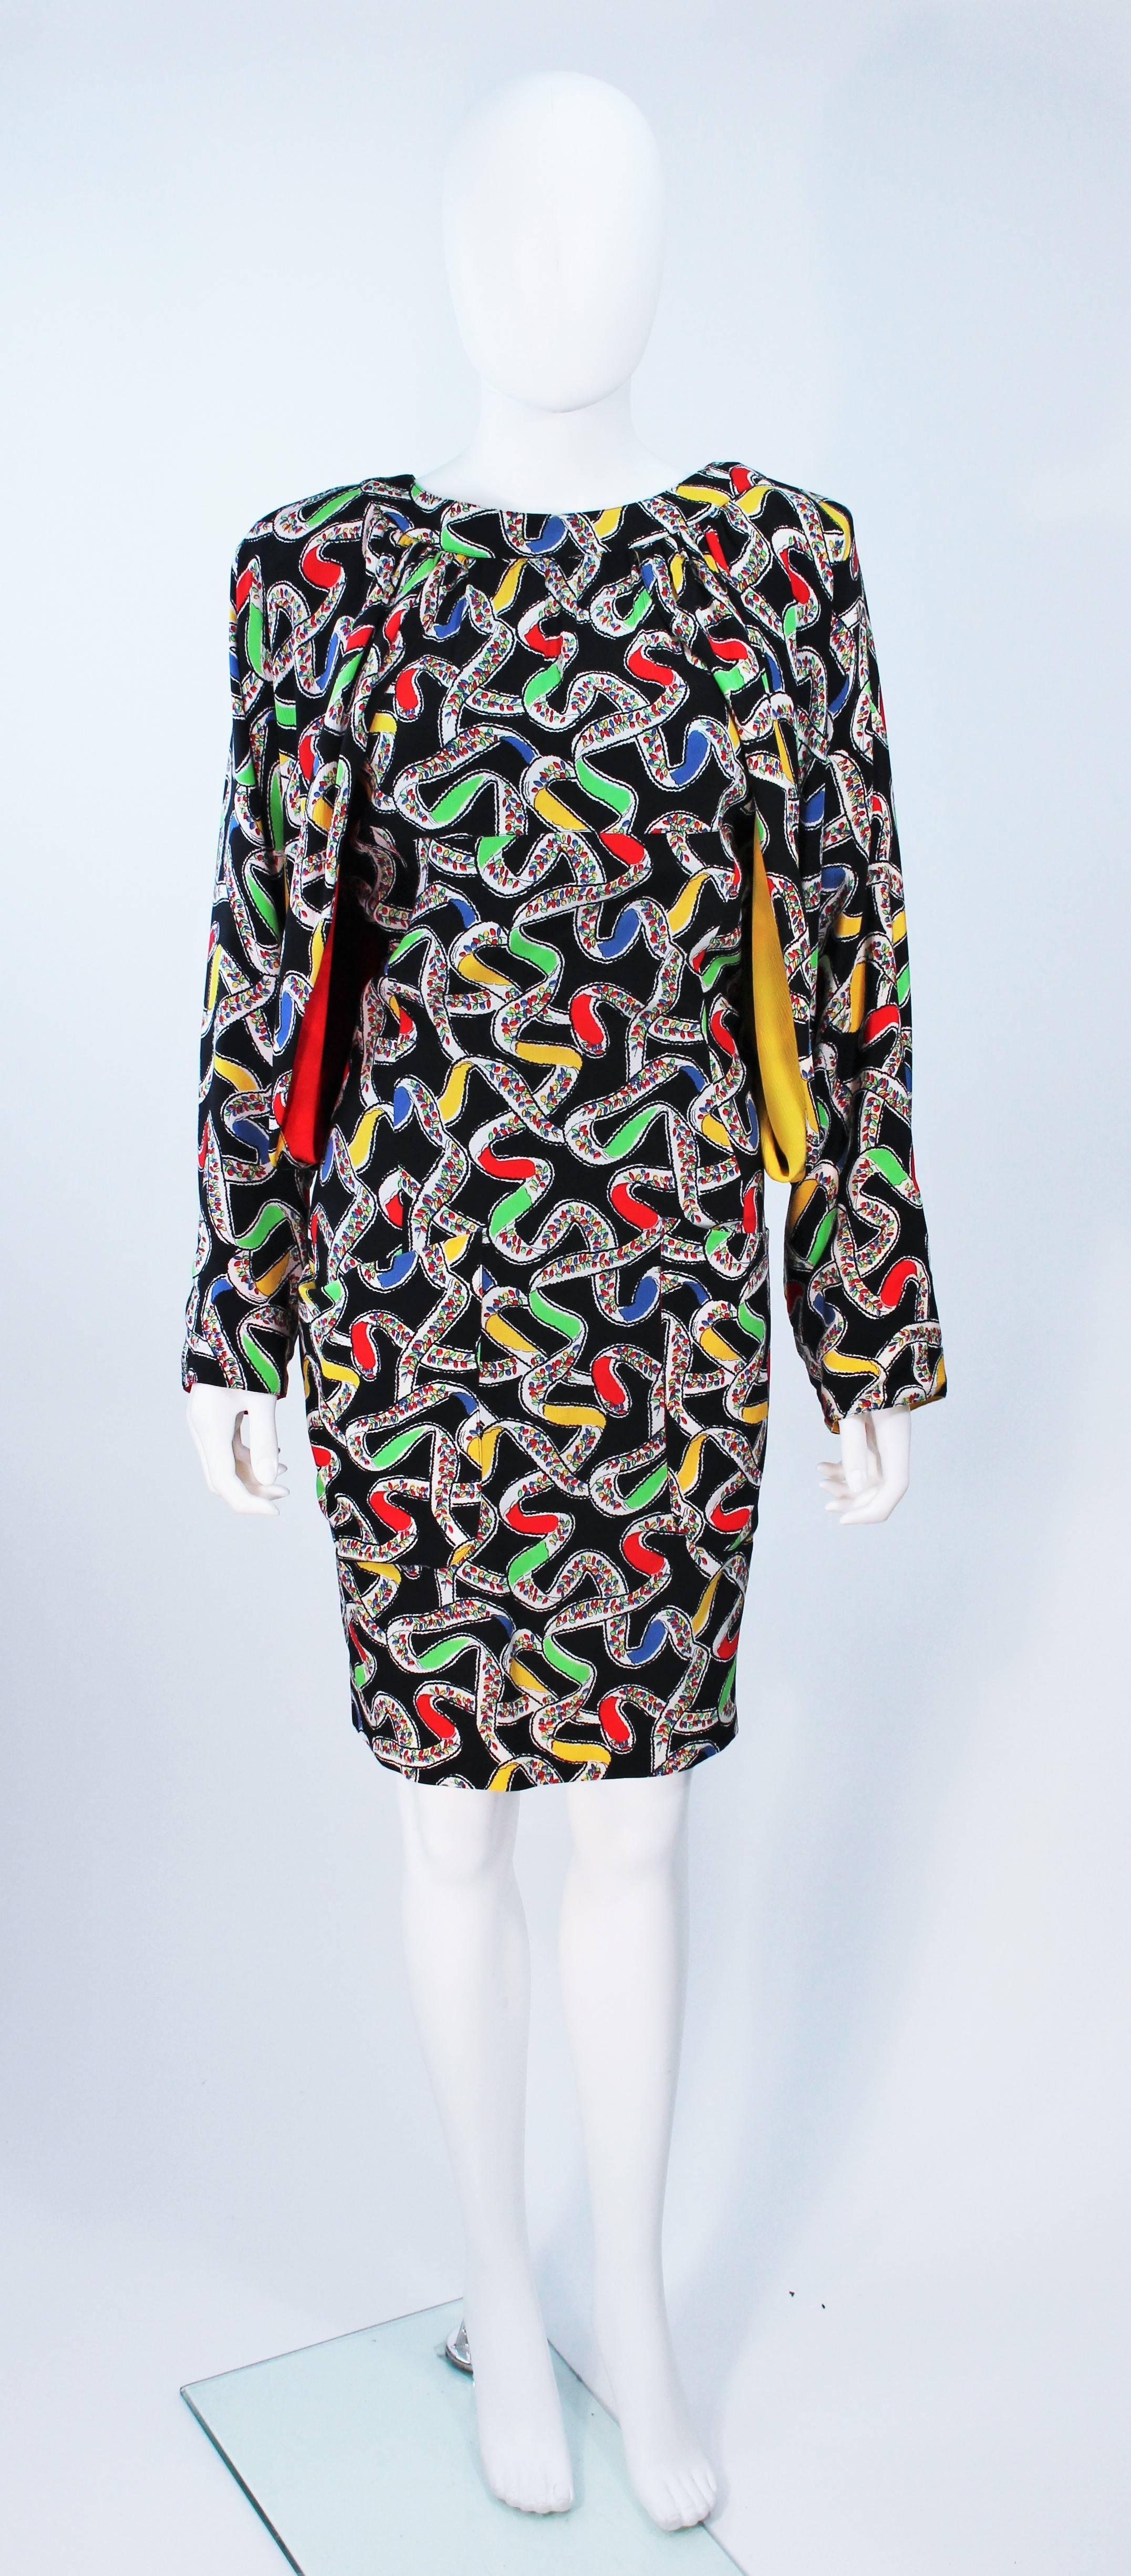  Dieser Karl Lagerfeld zugeschriebene Entwurf  das Kleid besteht aus schwarzer Seide mit einem abstrakten Druck in einer Primärfarbengeschichte. Mit drapierten Ärmeln und einem Schlüsselloch im Rücken. Es gibt einen Reißverschluss in der Mitte des